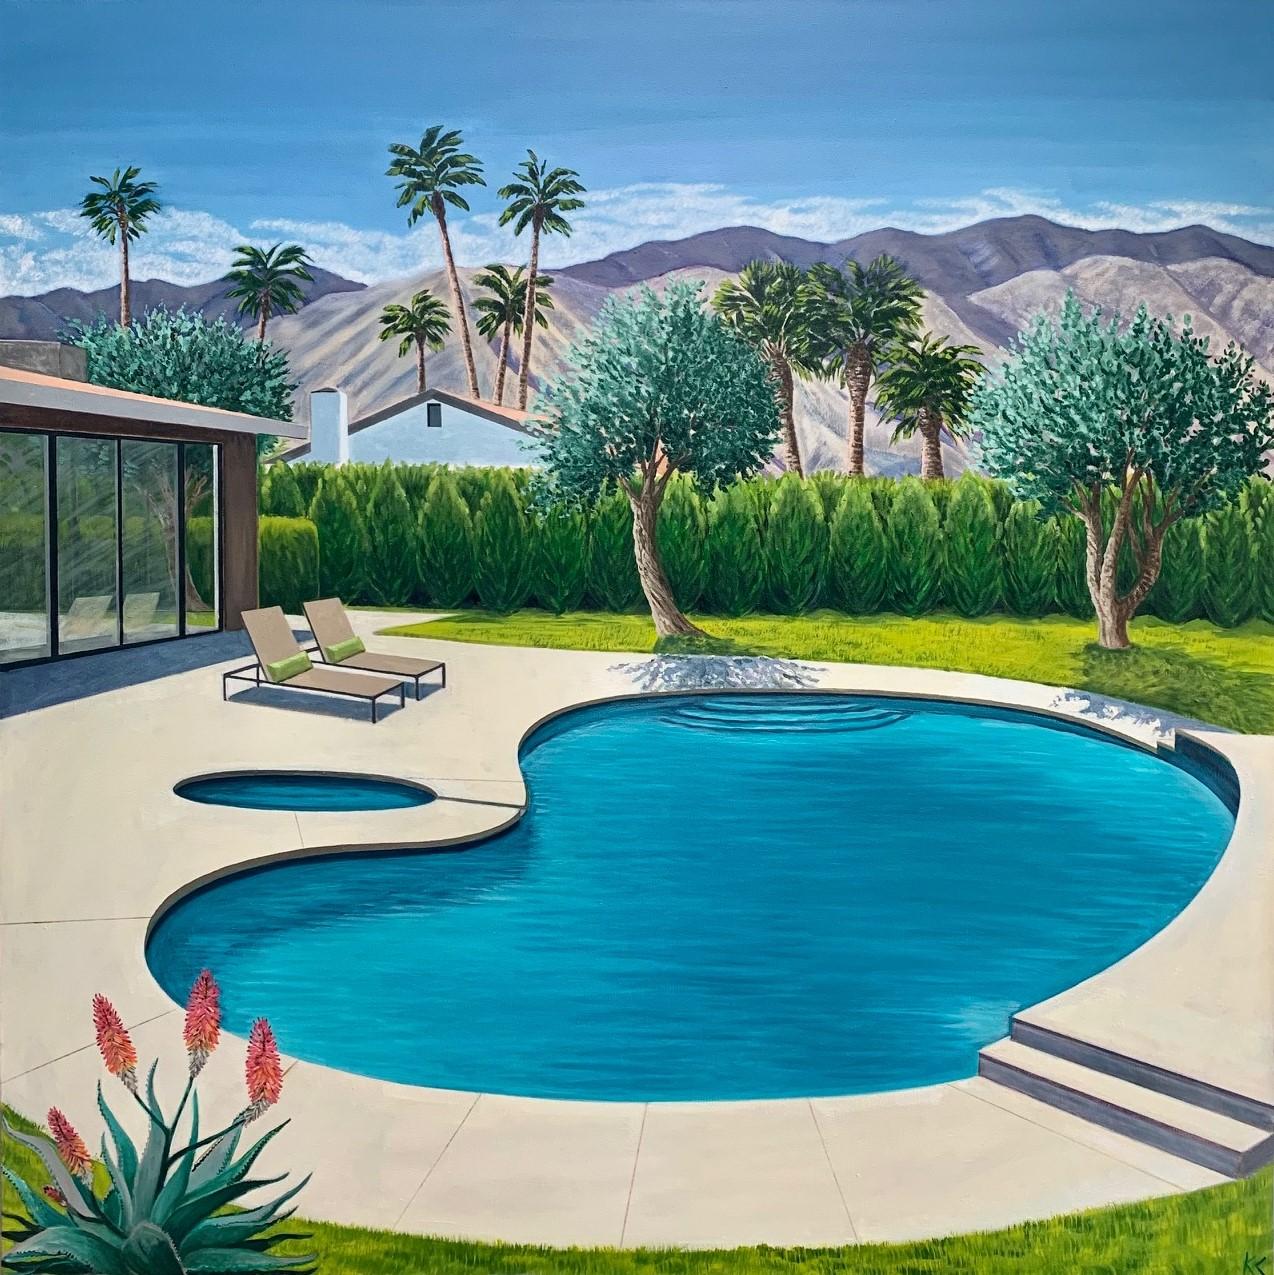 Villa Olivos par Karen Lynn [2021]

Cette peinture fait partie de ma série de peintures sur la piscine moderniste. Dans ce tableau particulier, j'ai aimé la forme de la piscine en forme de rein et j'ai placé les oliviers entourant la maison moderne